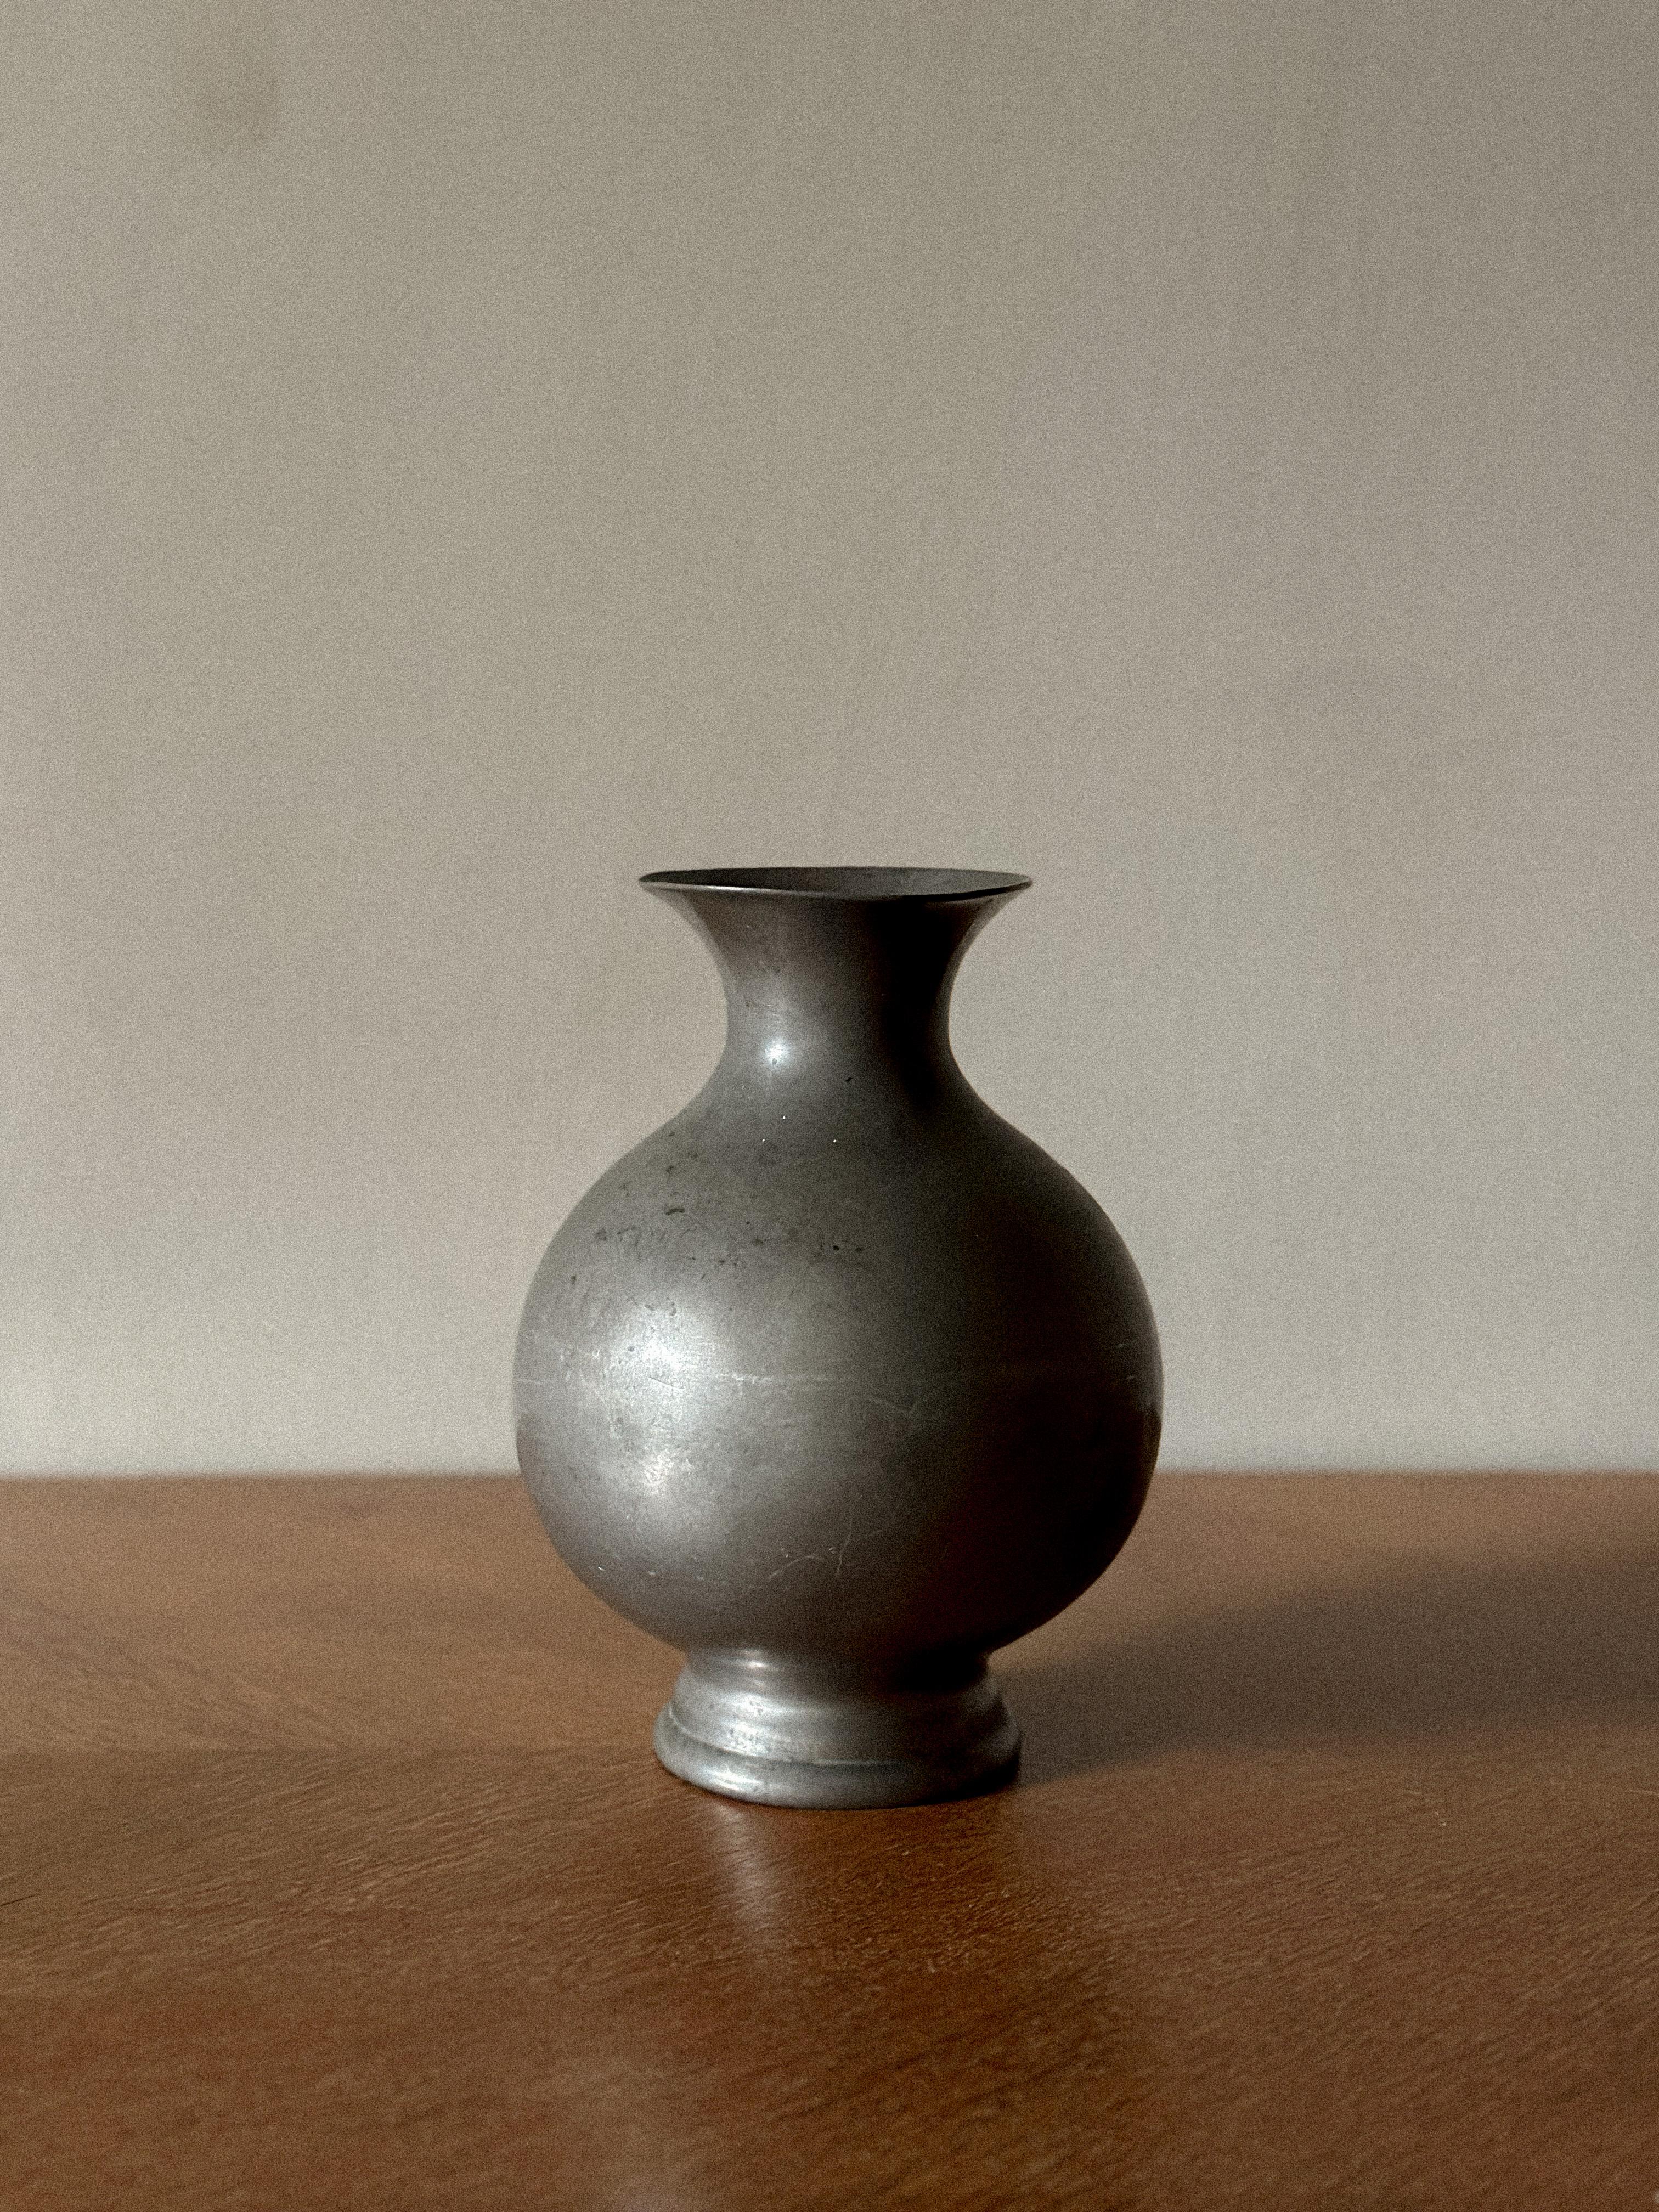 Firma Svenkt Tenn, eine Vase aus Zinn, Stockholm 1934.
Gestempelt mit Engelsmarke, Stockholm H8. Höhe 20 cm
Alters- und gebrauchsbedingte Abnutzung. Kratzer. Felgenchip